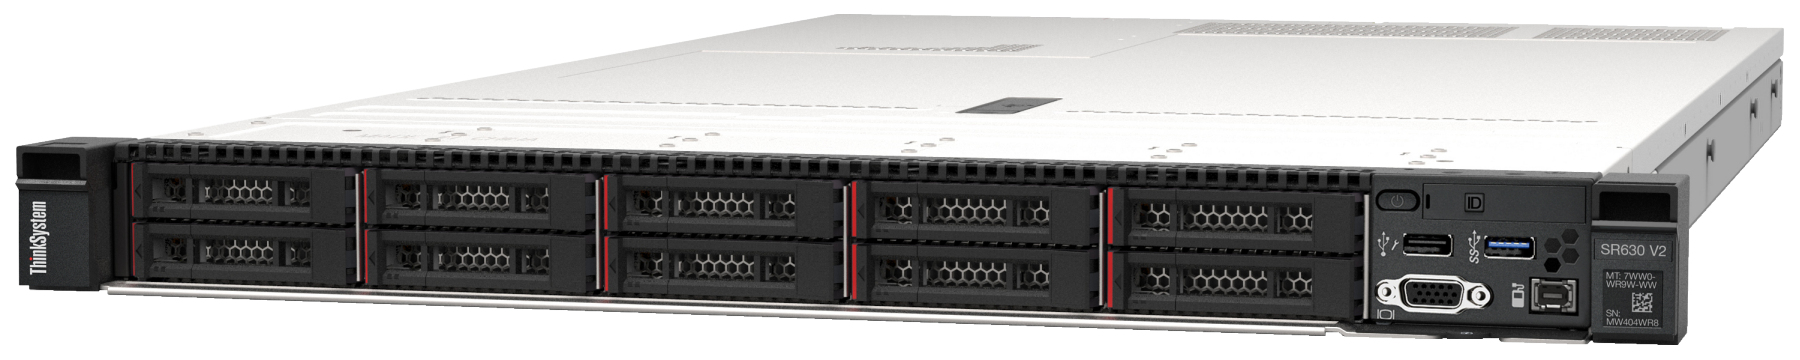 Сервер Lenovo ThinkSystem SR630 V2 (7Z71A052EA). Фиксированная комплектация сервера